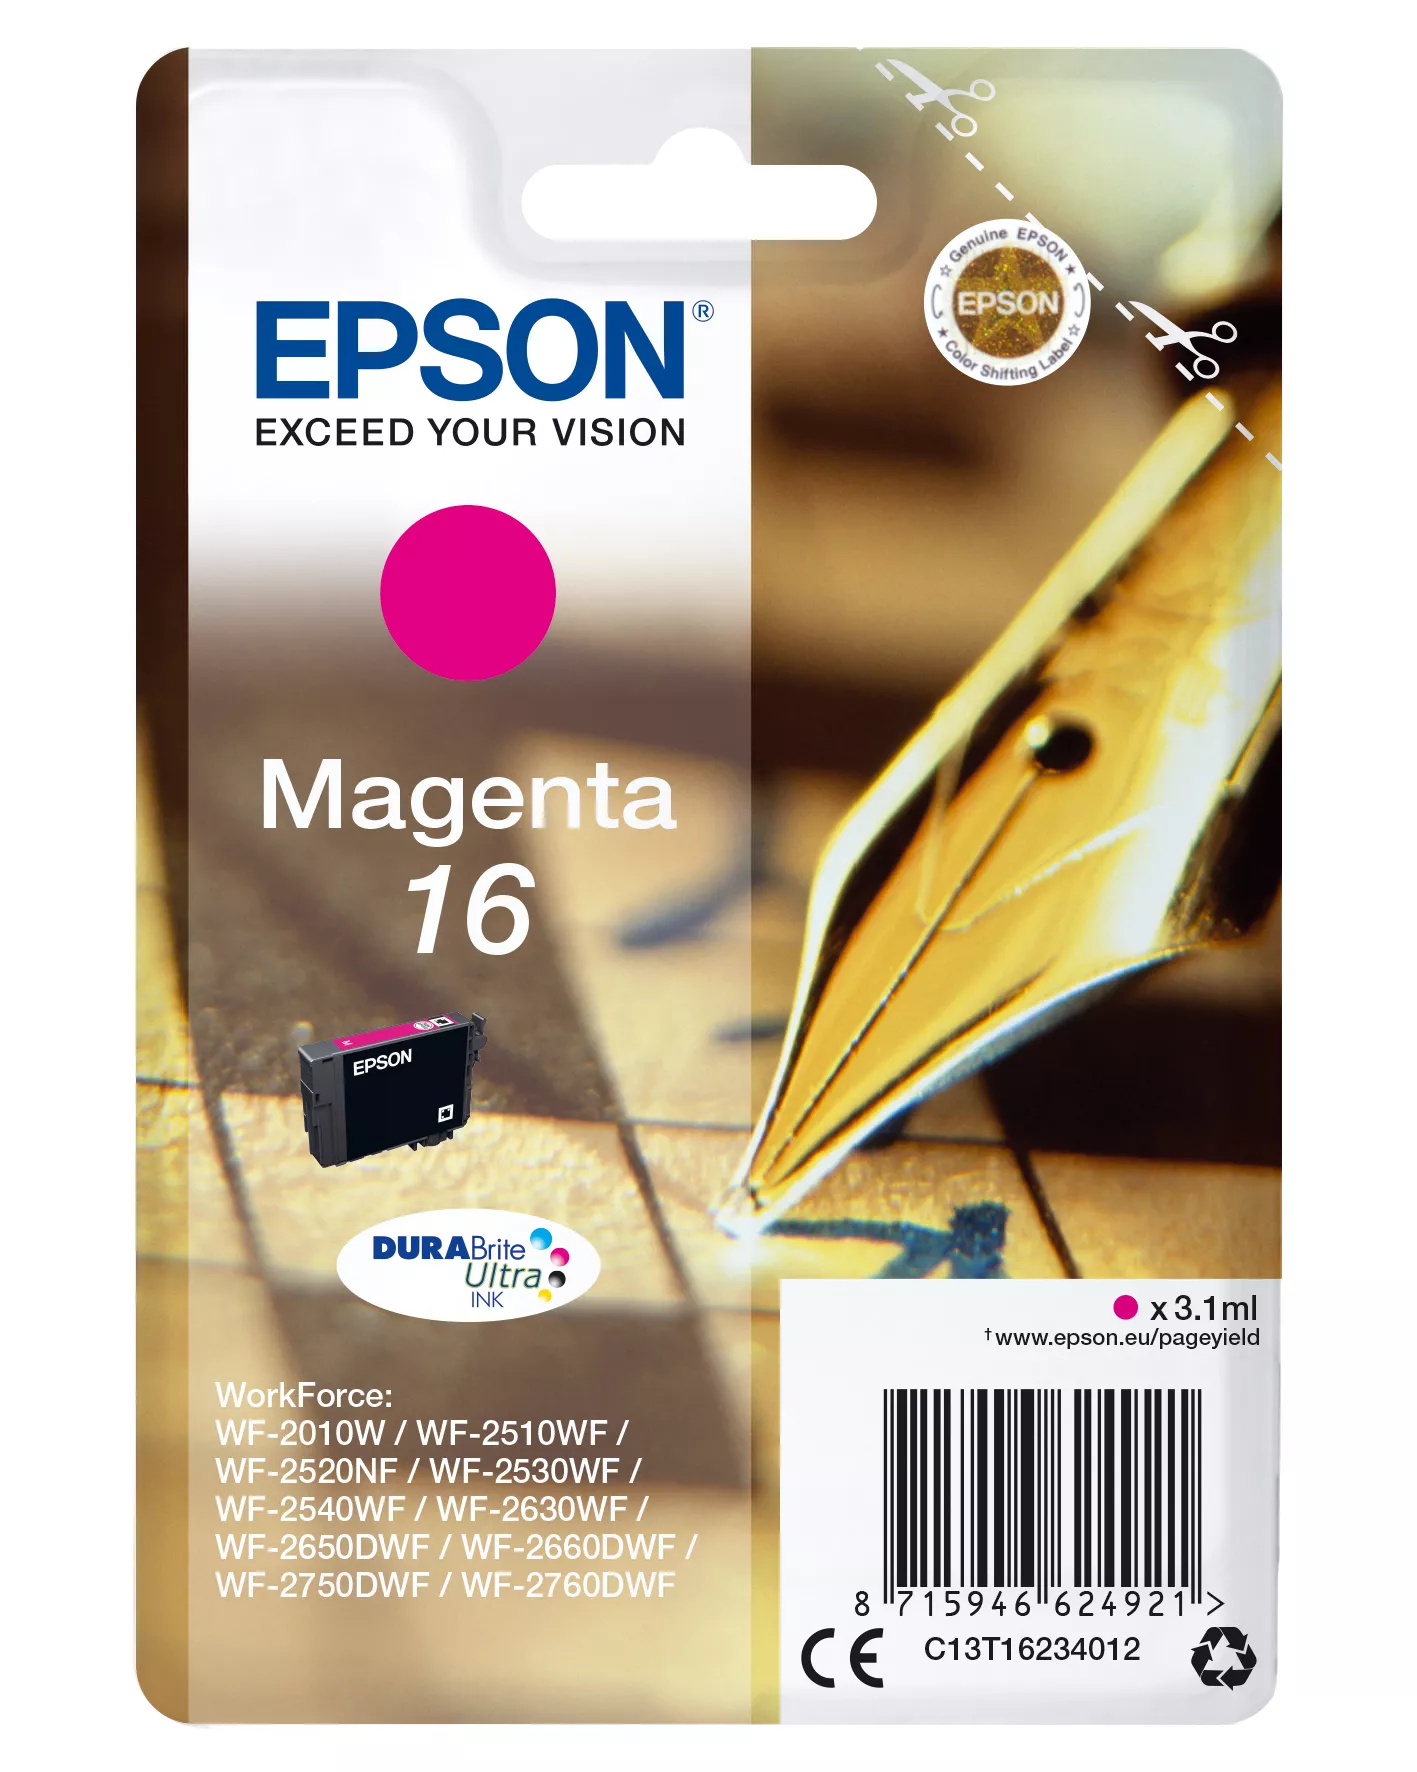 Achat EPSON 16 cartouche encre magenta capacité standard 3.1ml - 8715946624938